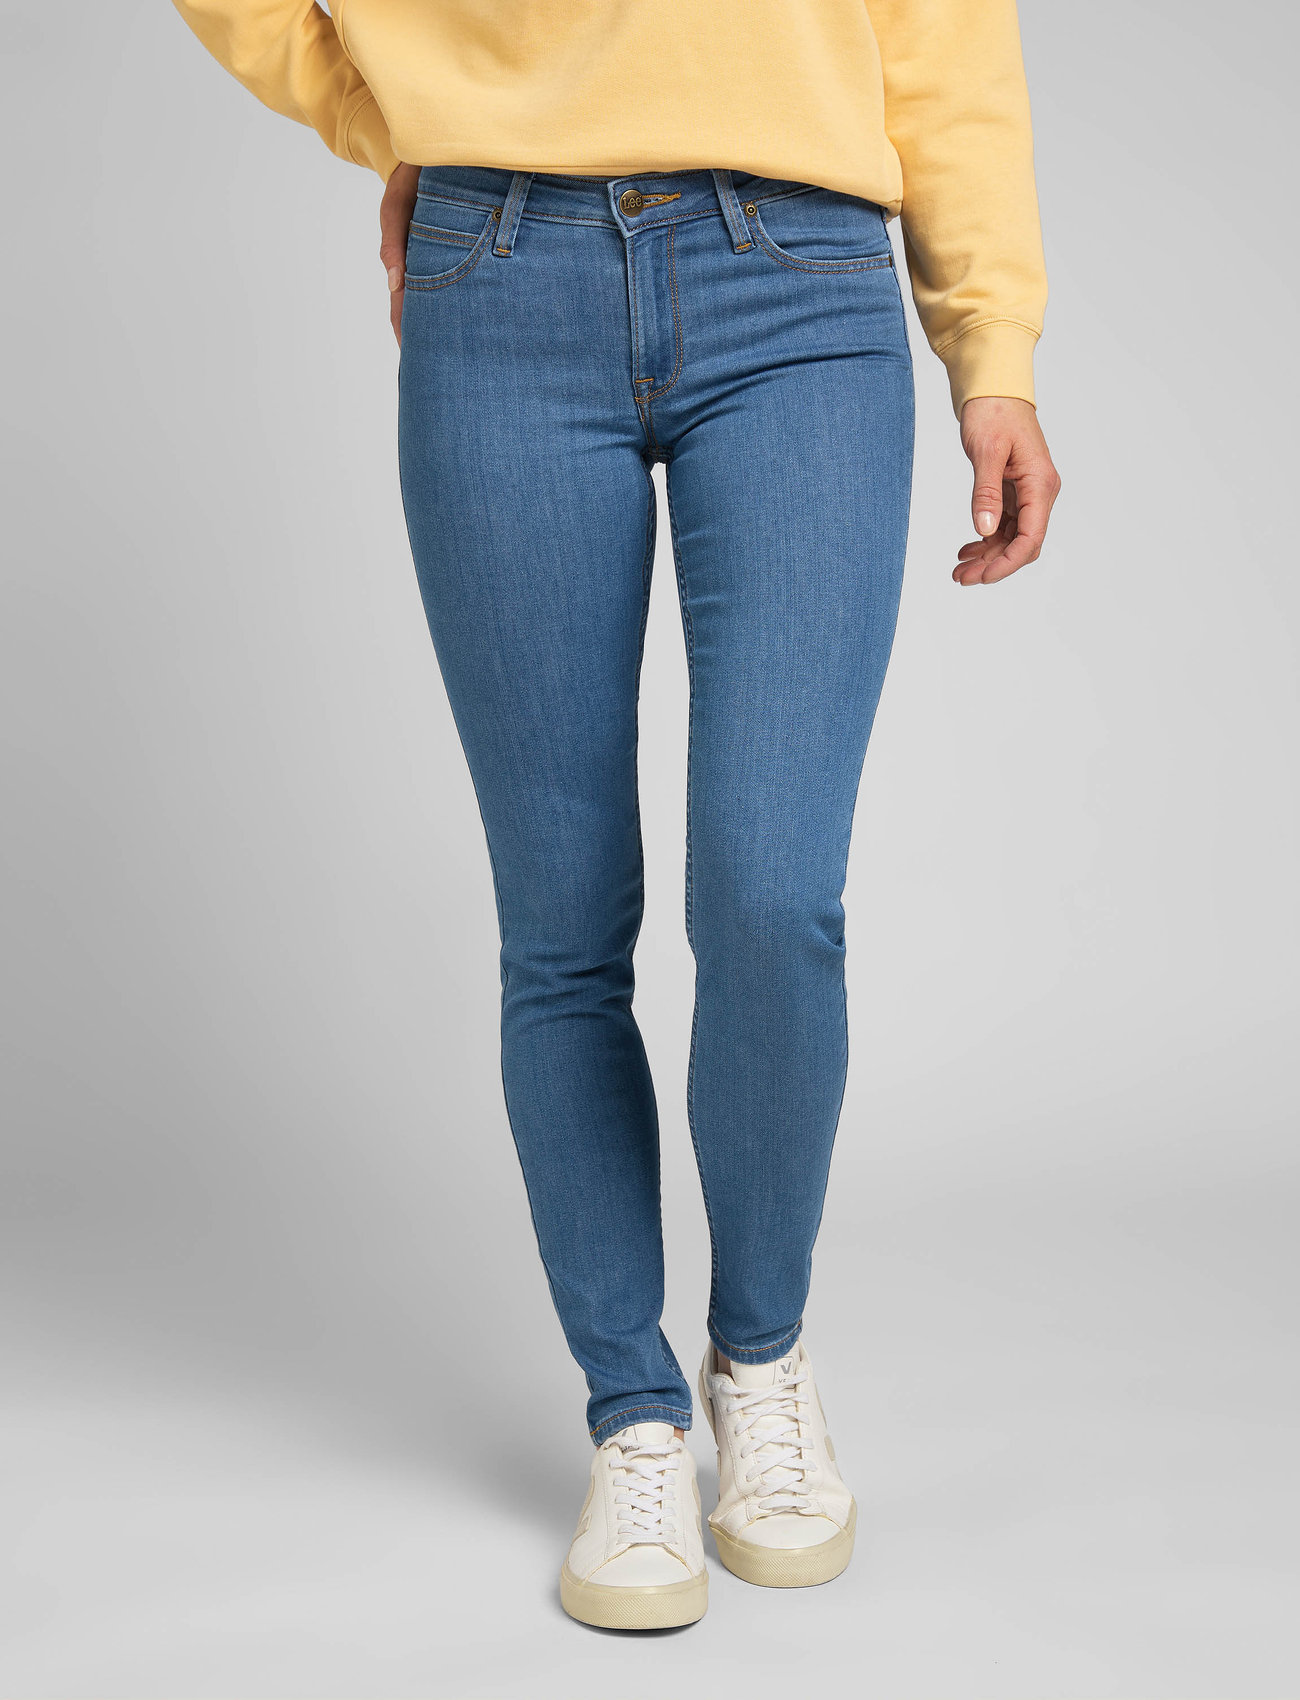 Te Onderzoek het Tram Lee Jeans Scarlett - Skinny jeans - Boozt.com